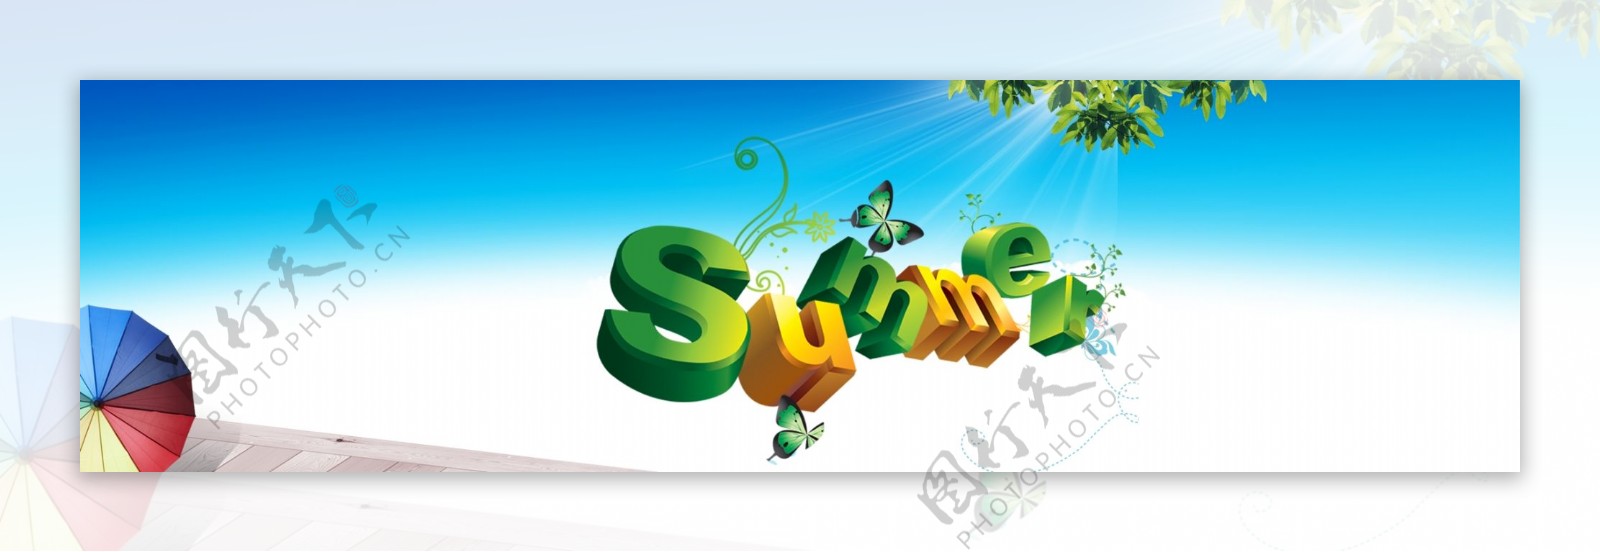 通过夏天的英文和阳光蓝天表现出夏天的韵味